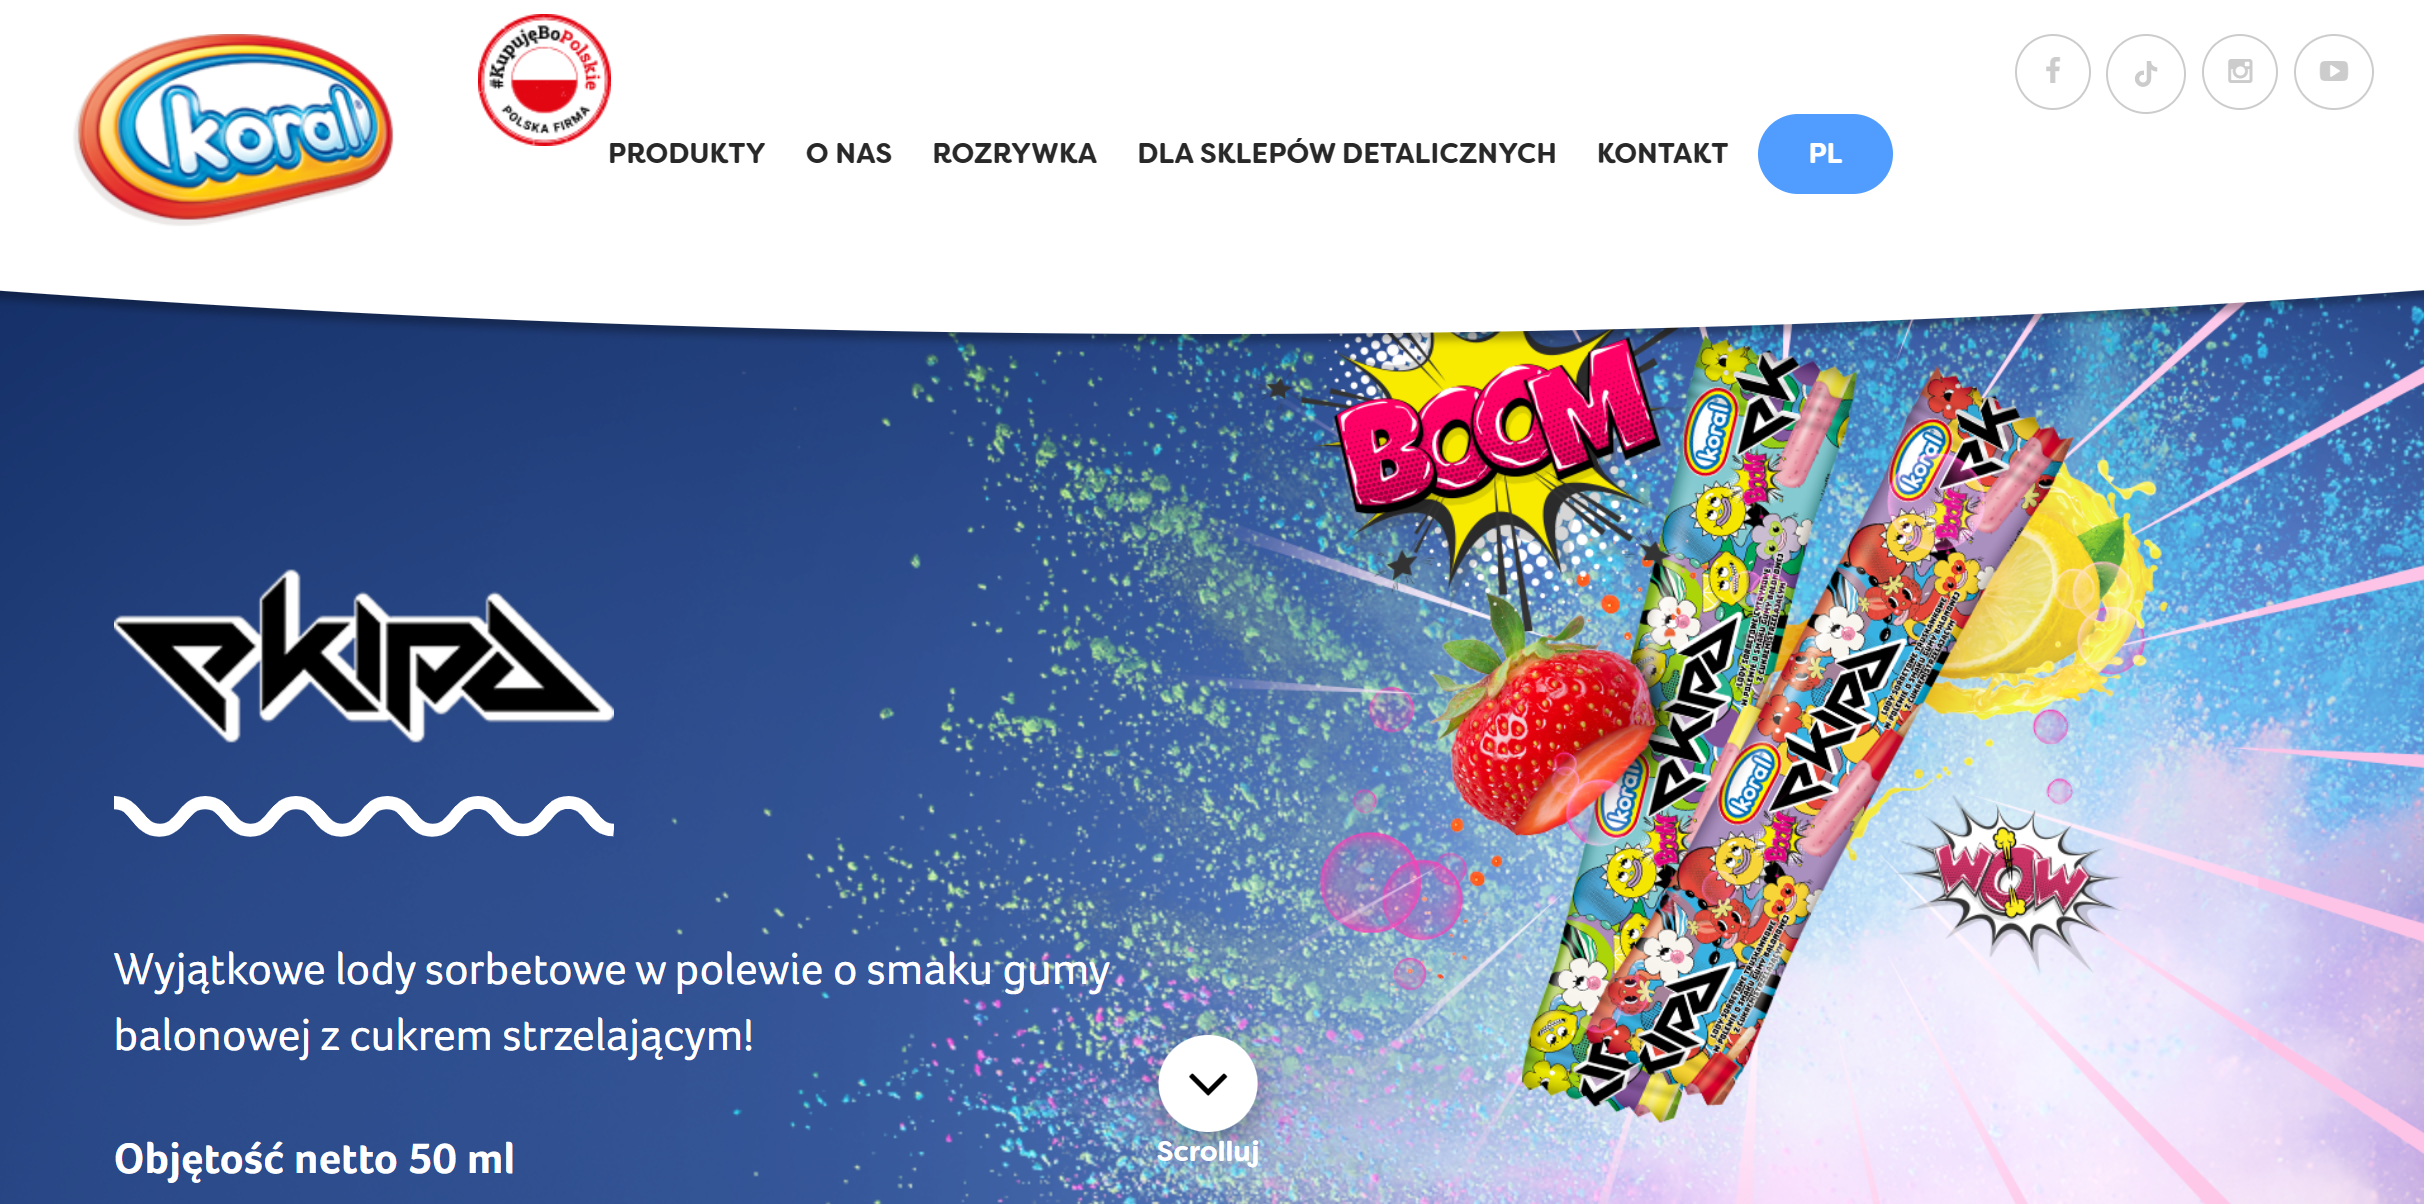 Zdjęcie promocyjne lodów ekipy koral na kosmicznym tle z owocami i komiksowymi dymkami na stronie internetowej marki